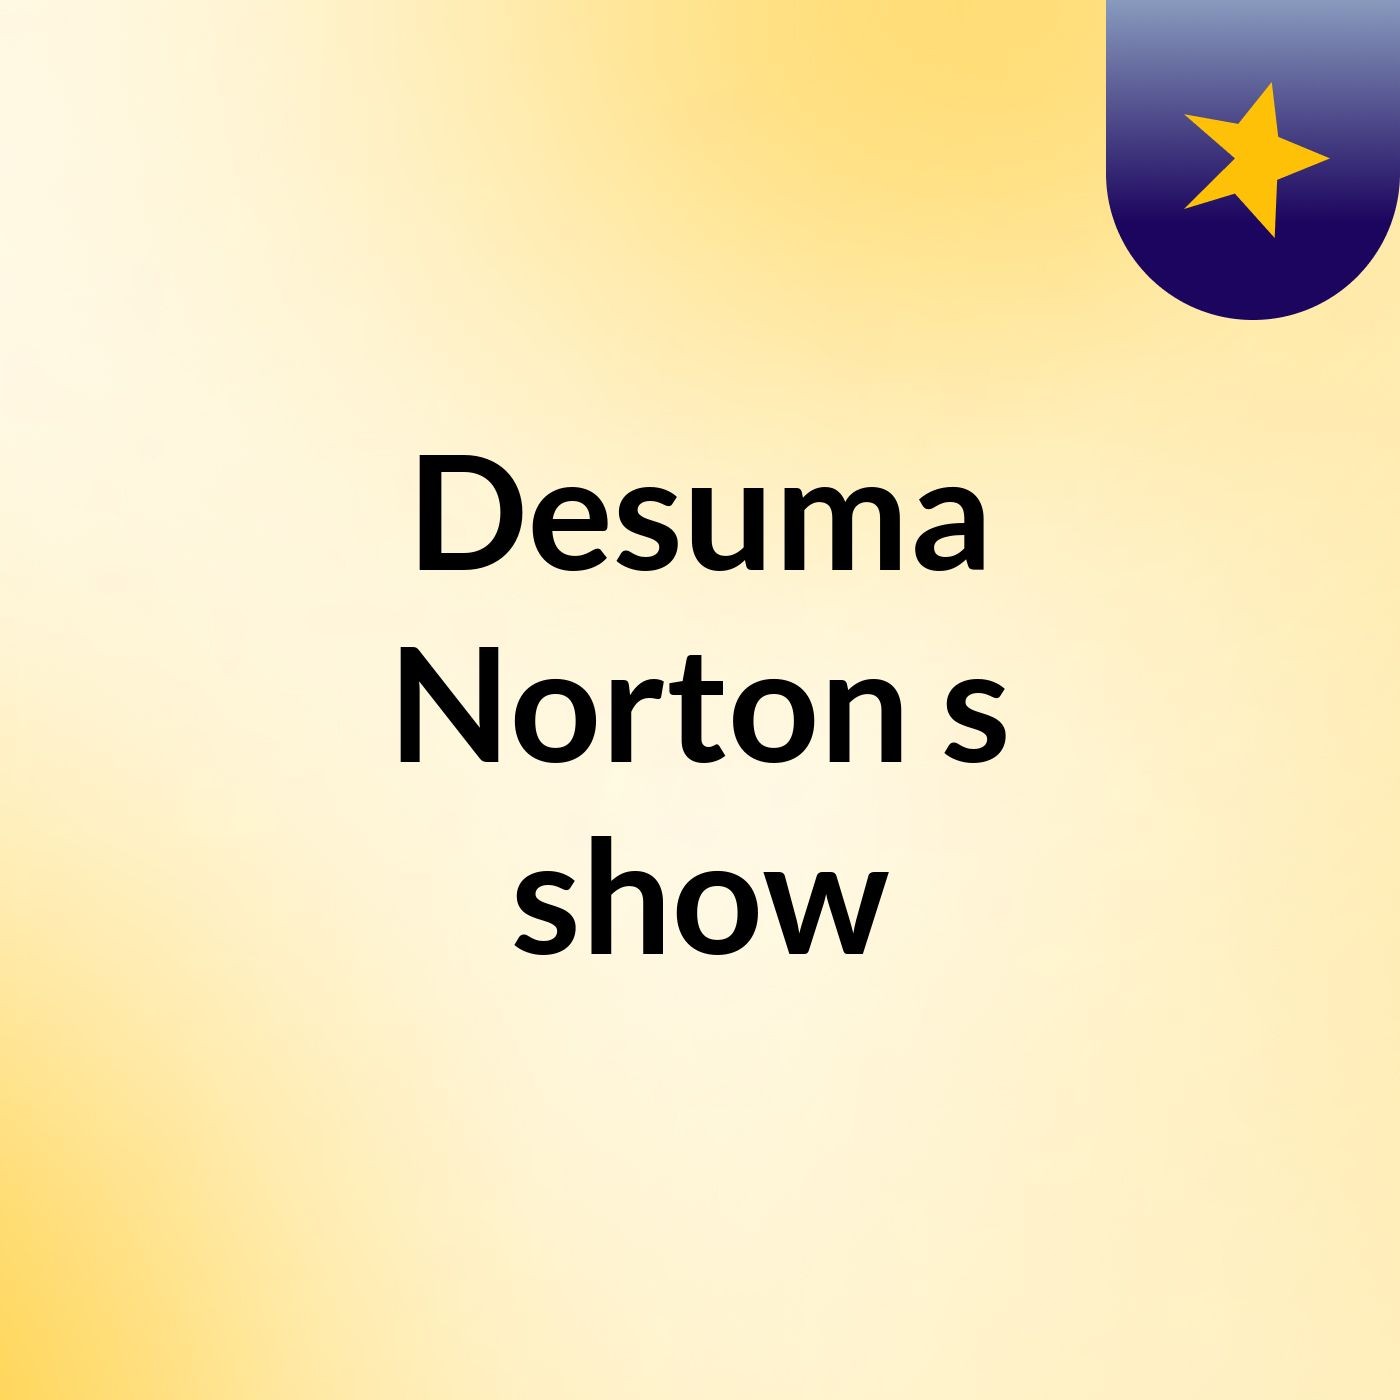 Desuma Norton's show